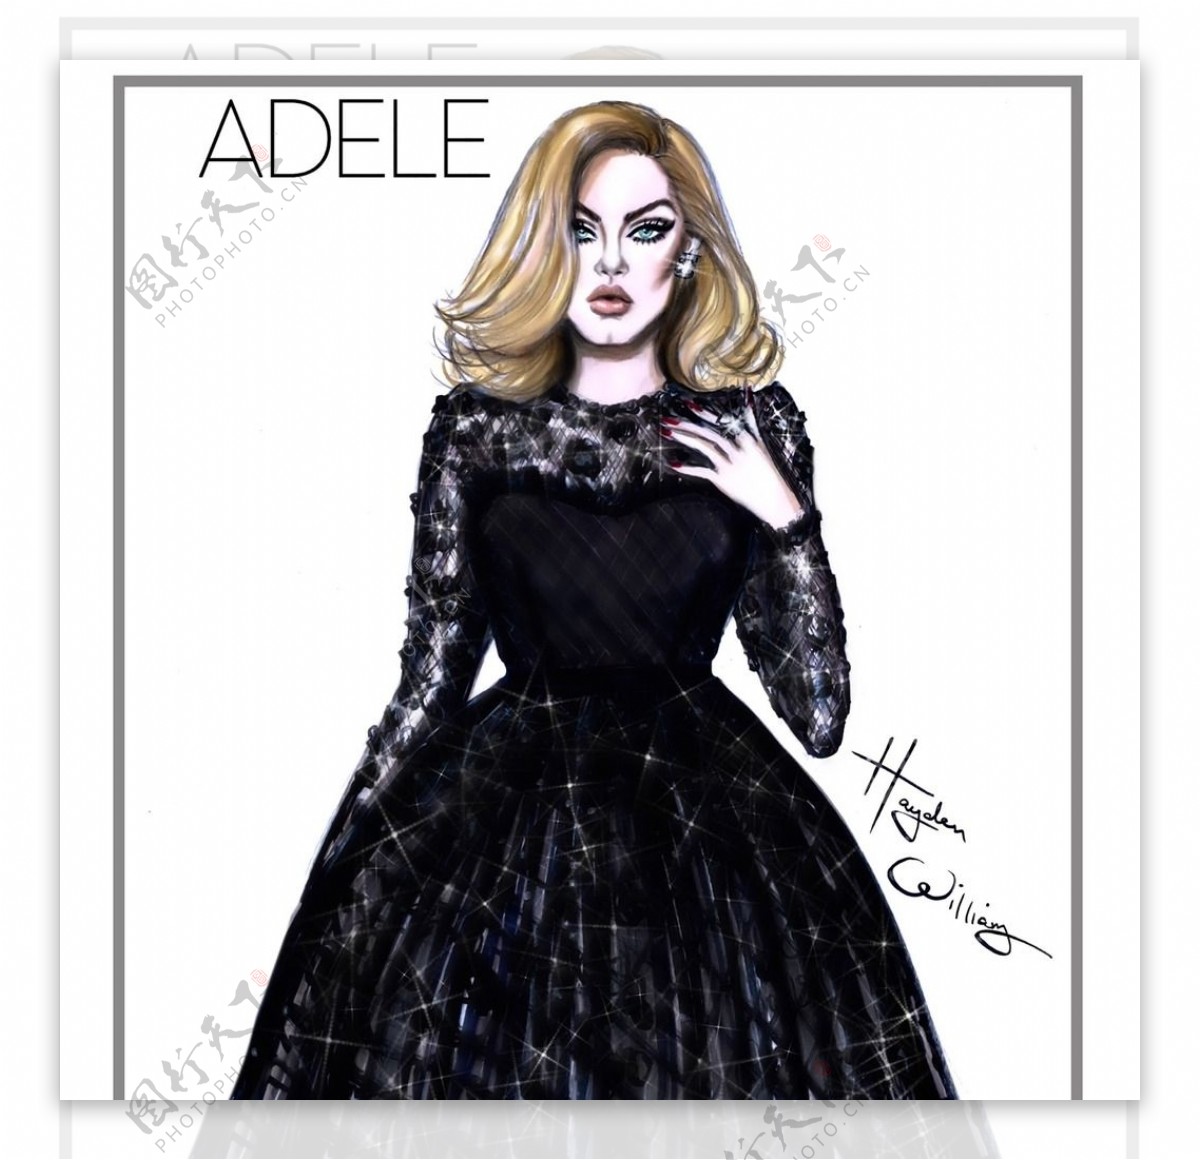 歌手Adele